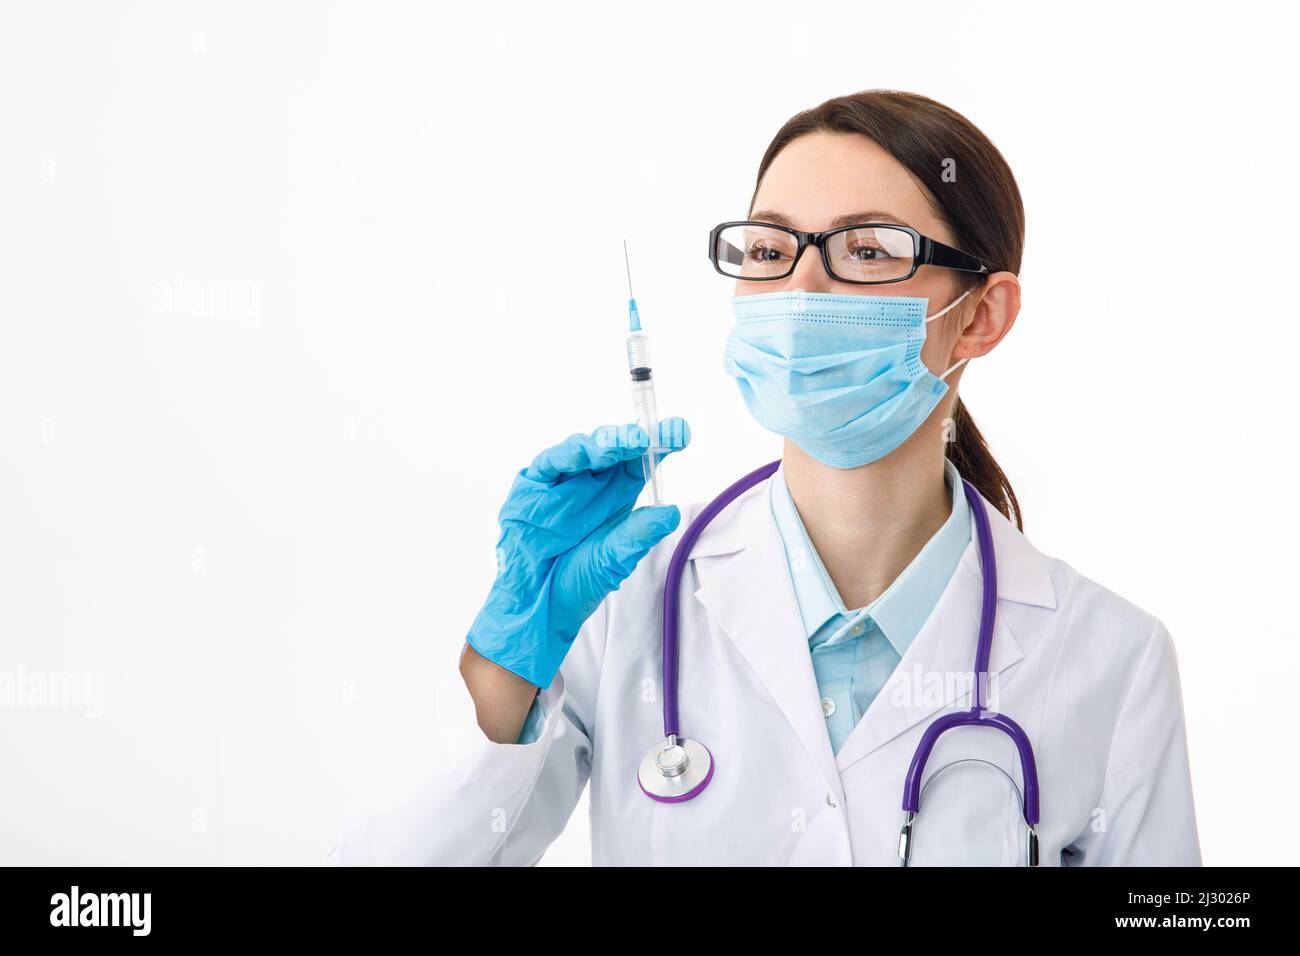 Un infermiere tiene una siringa prima di effettuare l'iniezione. Il concetto di vaccinazione. Foto Stock